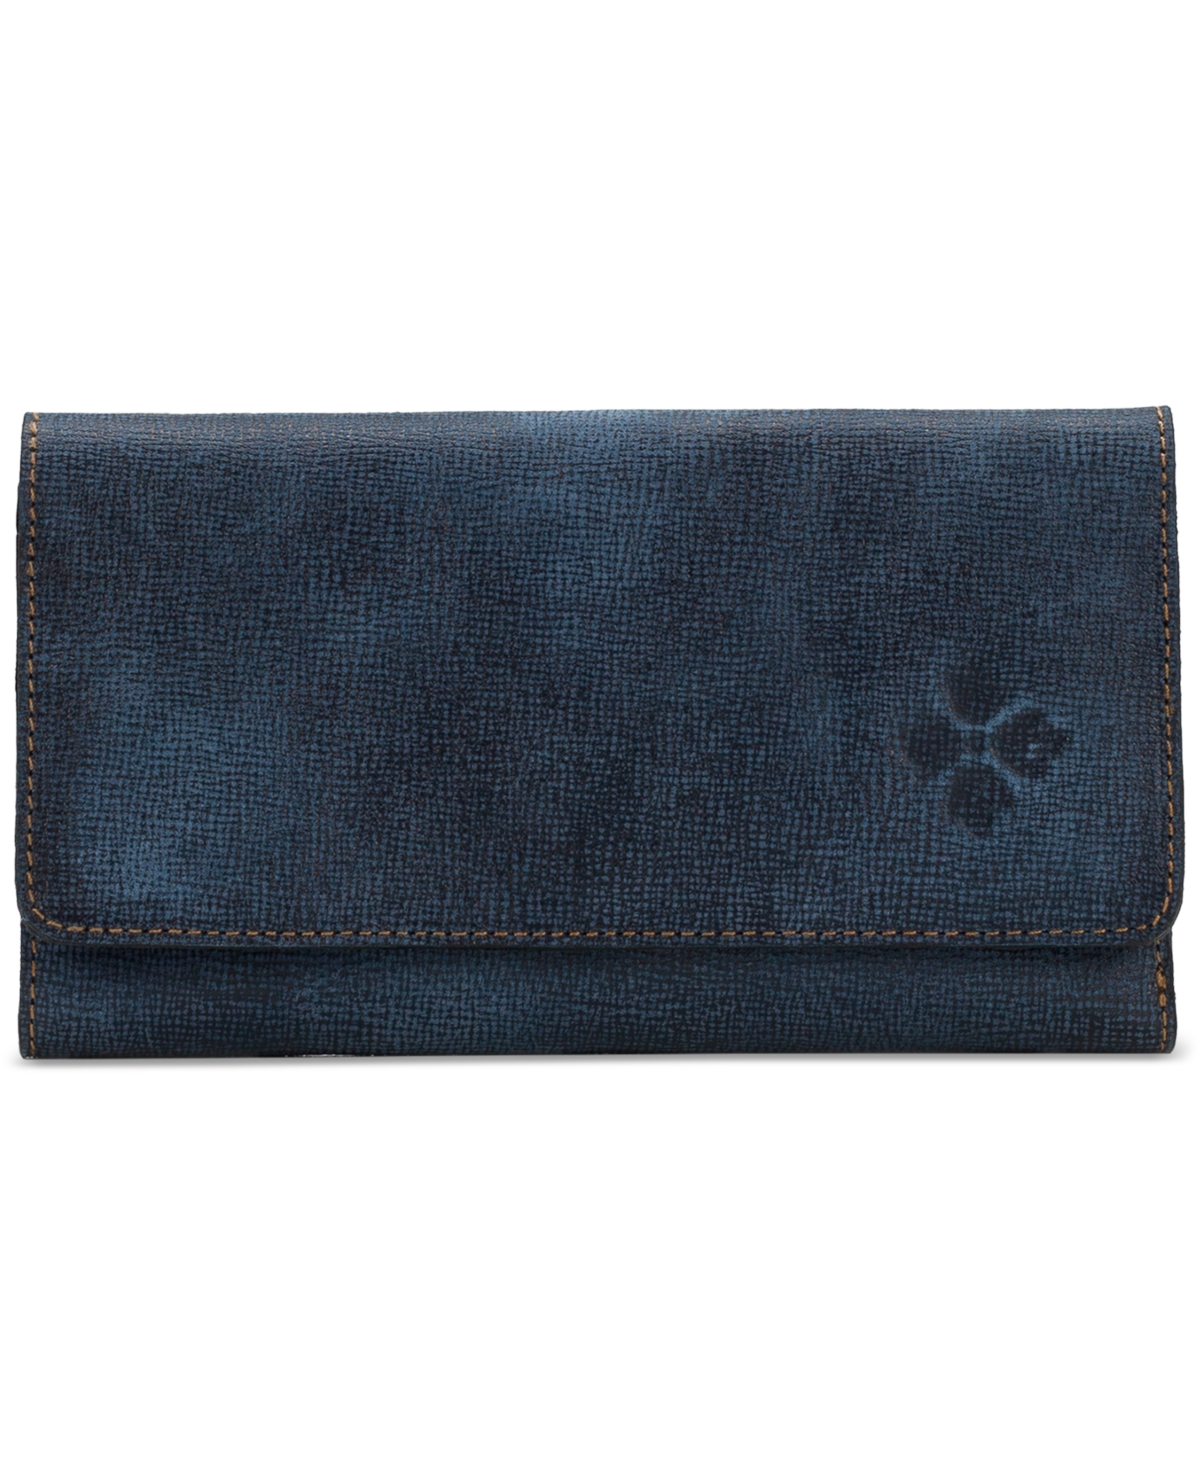 Terresa Leather Wallet - Dark Denim